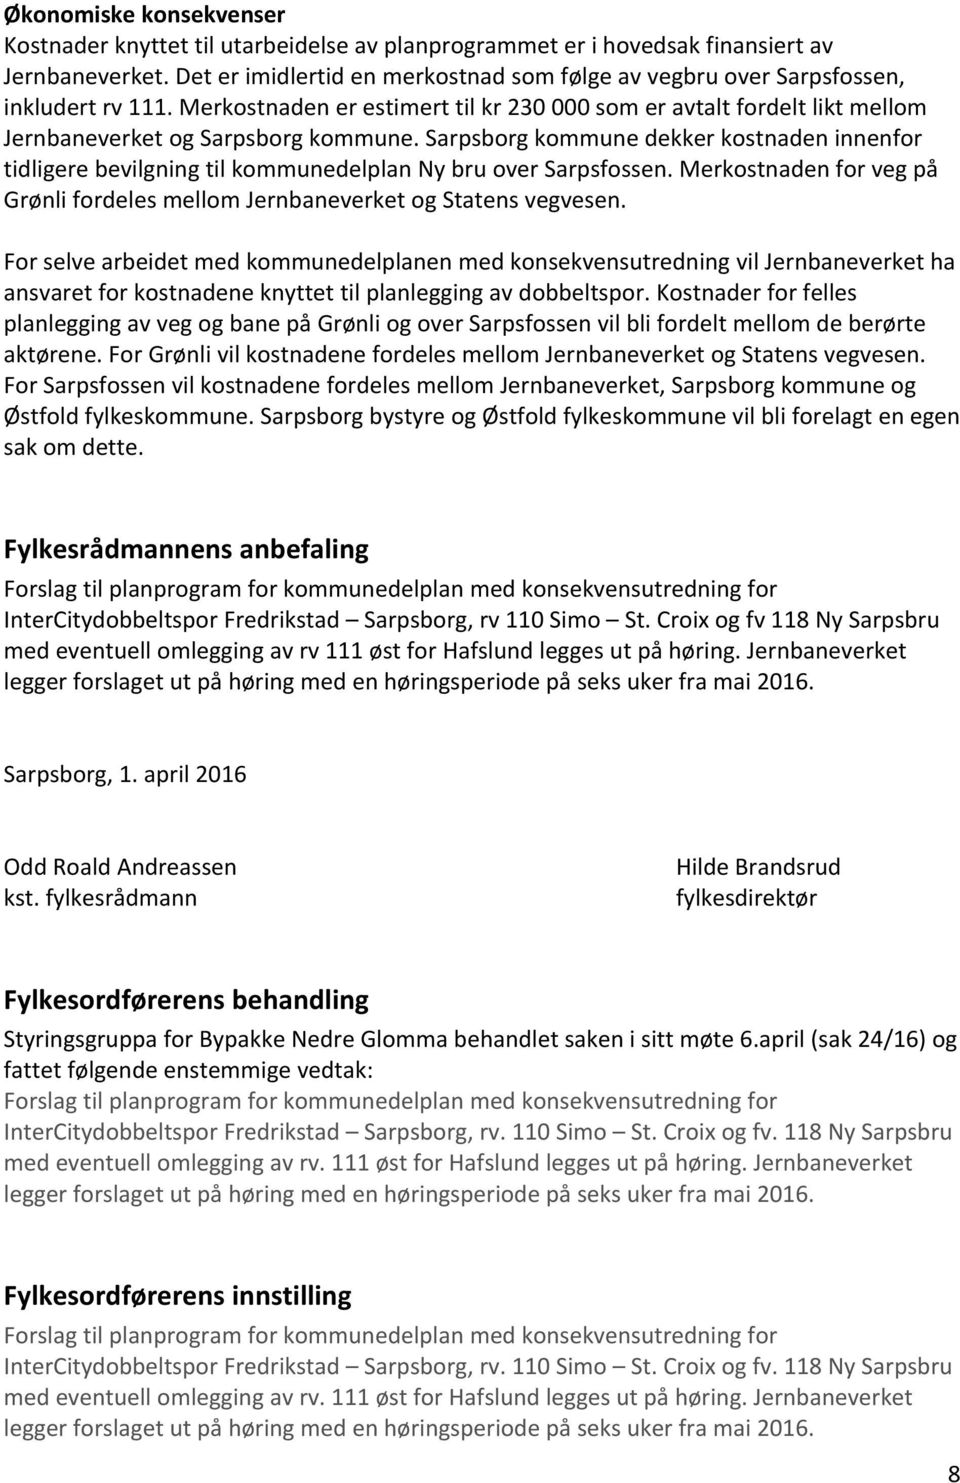 Sarpsborg kommune dekker kostnaden innenfor tidligere bevilgning til kommunedelplan Ny bru over Sarpsfossen. Merkostnaden for veg på Grønli fordeles mellom Jernbaneverket og Statens vegvesen.